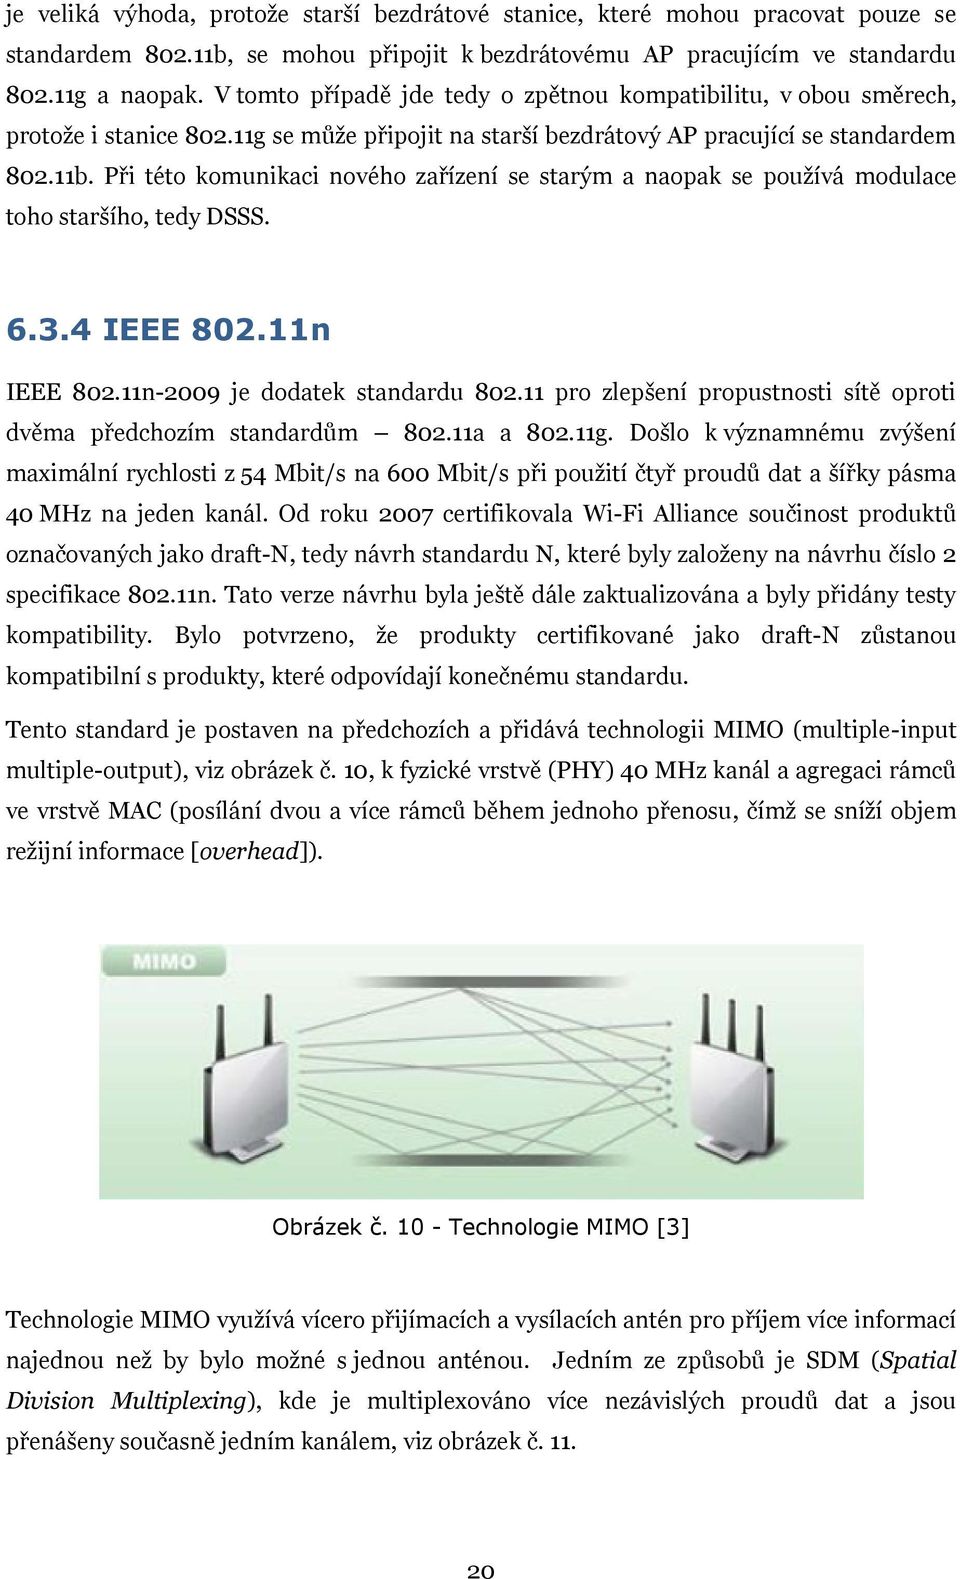 Při této komunikaci nového zařízení se starým a naopak se pouţívá modulace toho staršího, tedy DSSS. 6.3.4 IEEE 802.11n IEEE 802.11n-2009 je dodatek standardu 802.